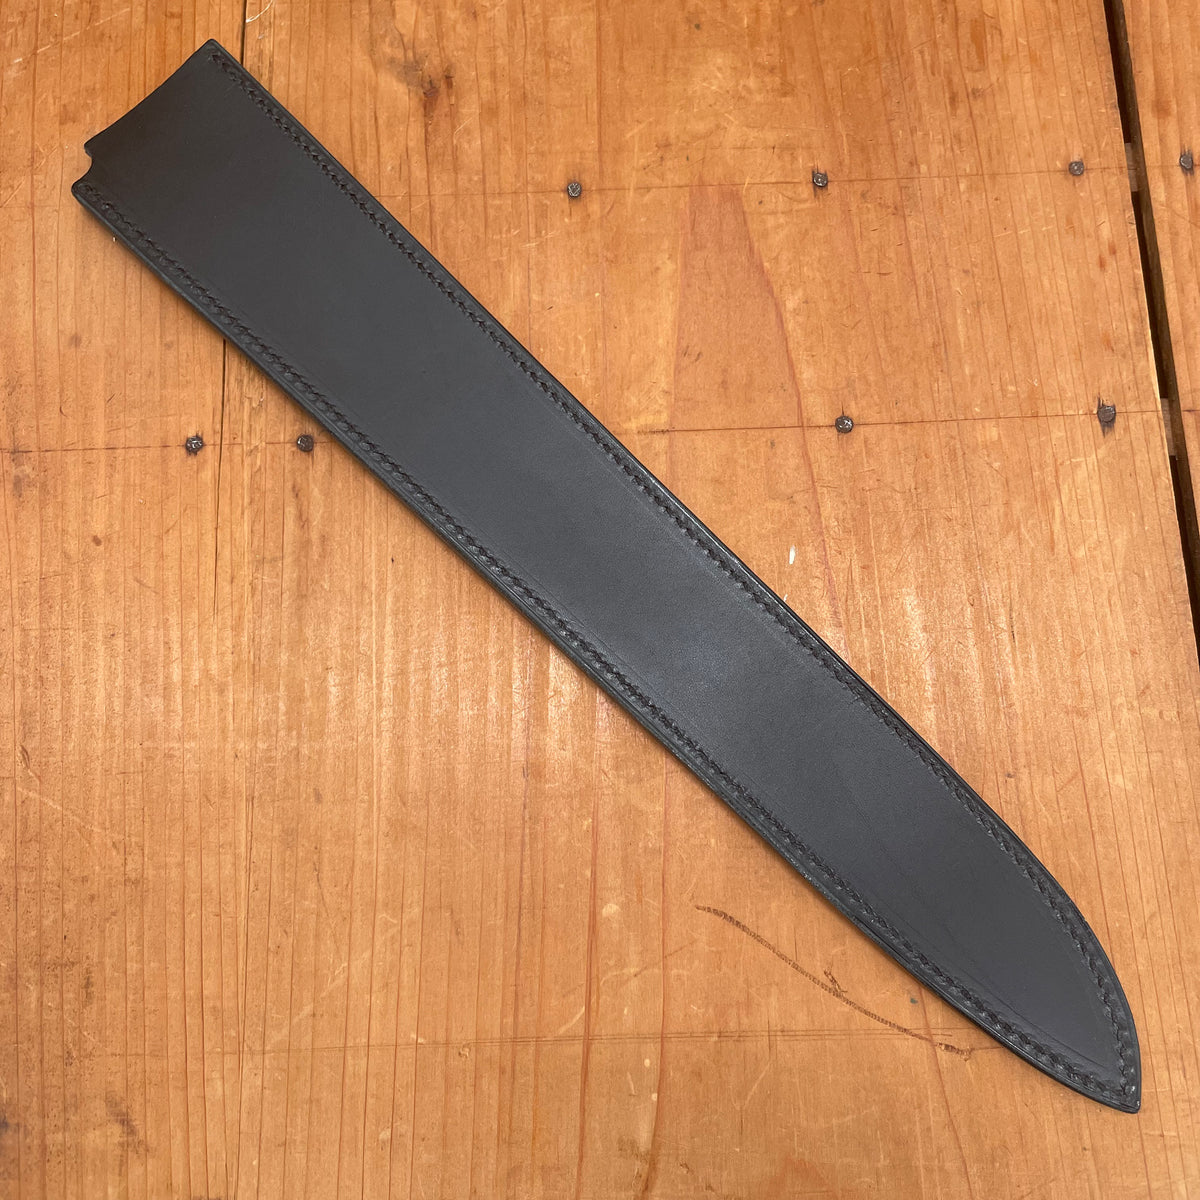 Florentine Kitchen Knives Slicer/Bread Black Leather Sheath